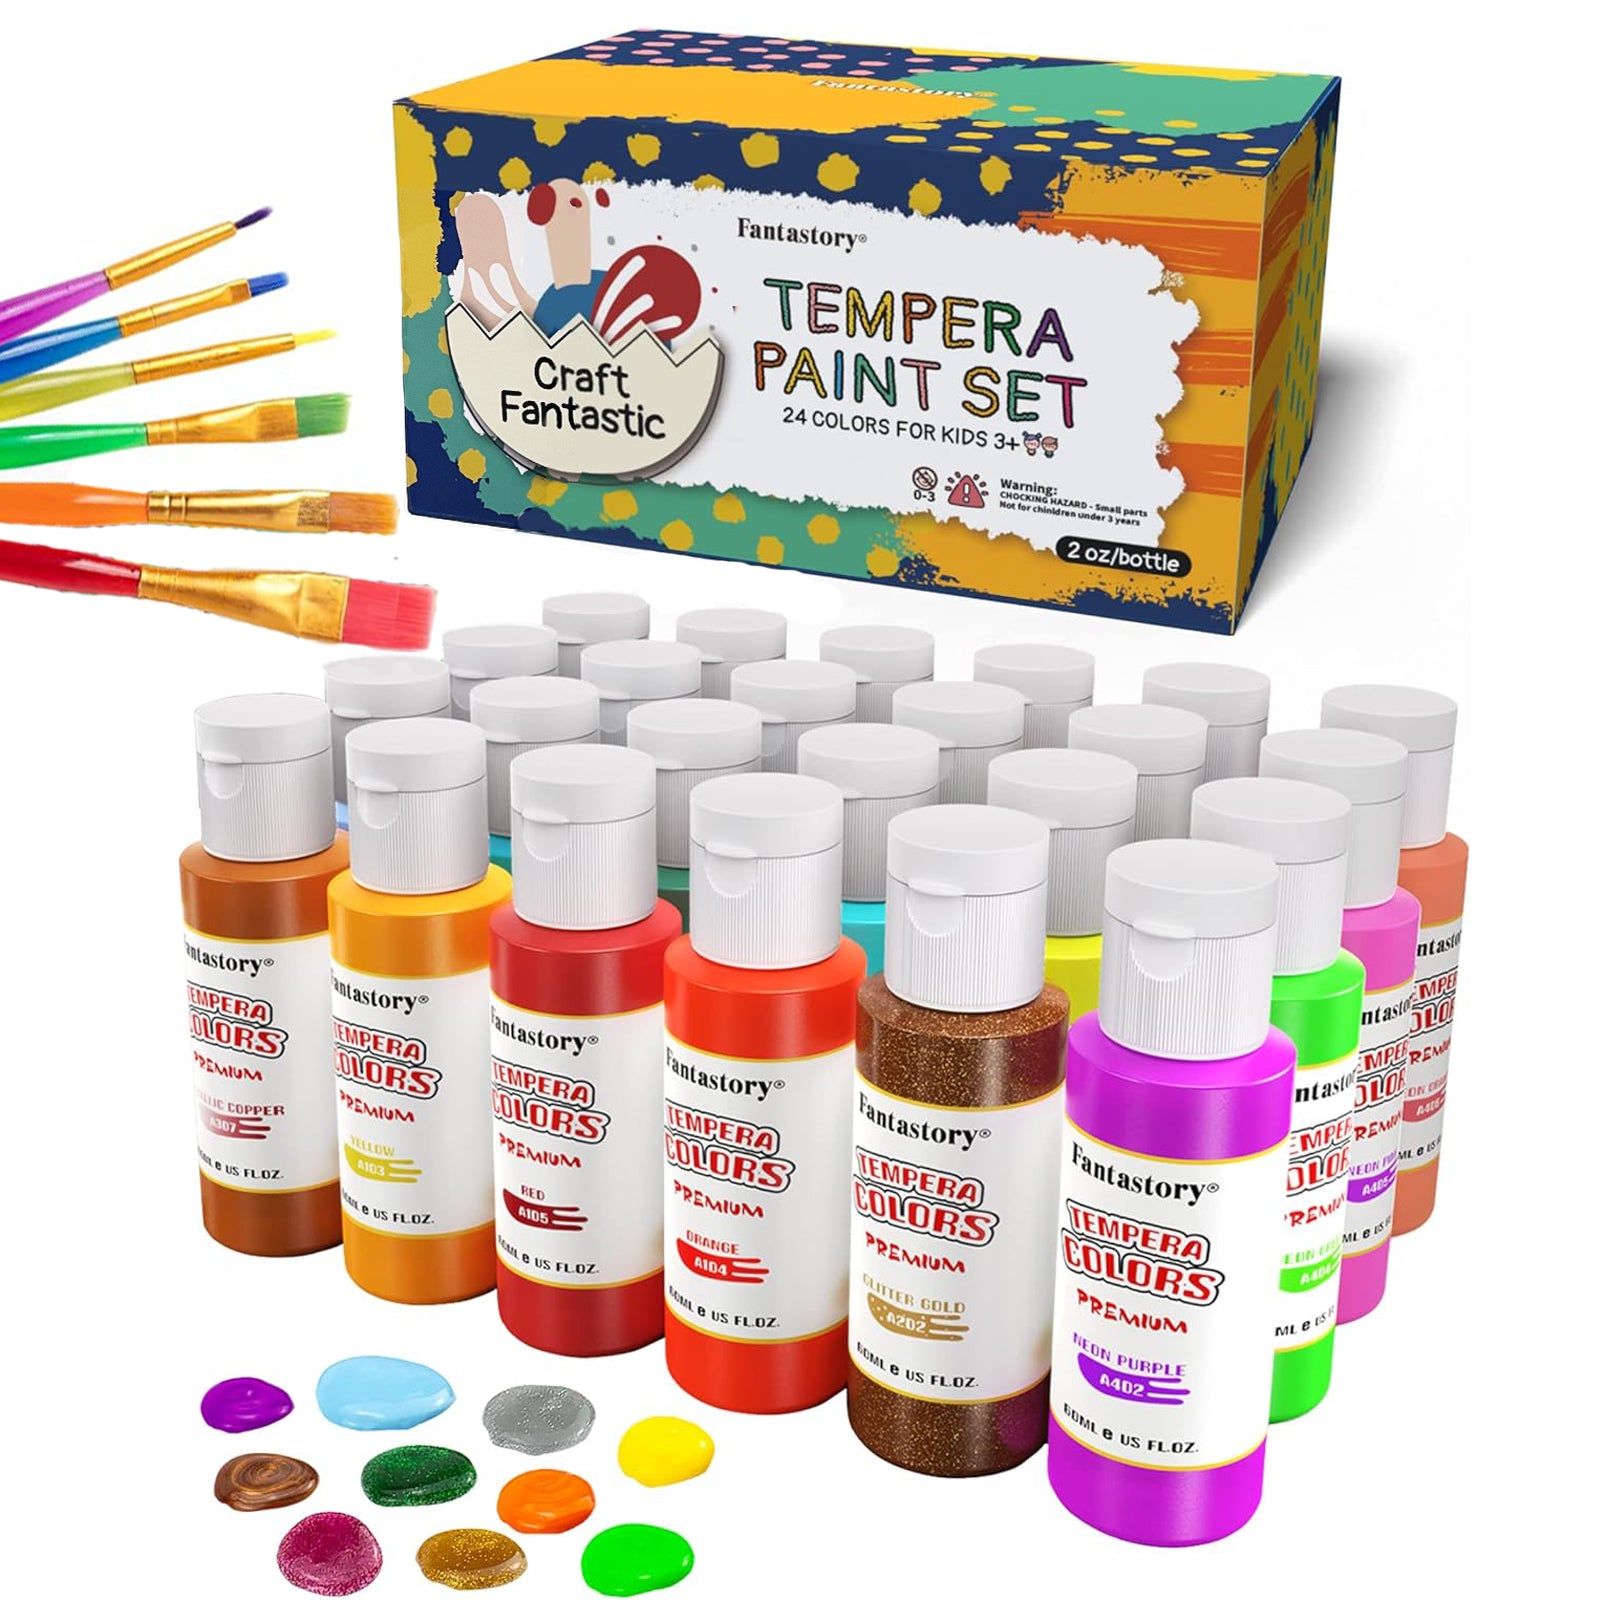 Fantastory Tempera Paint Set 24 Colors (2oz Each), Washable Paint